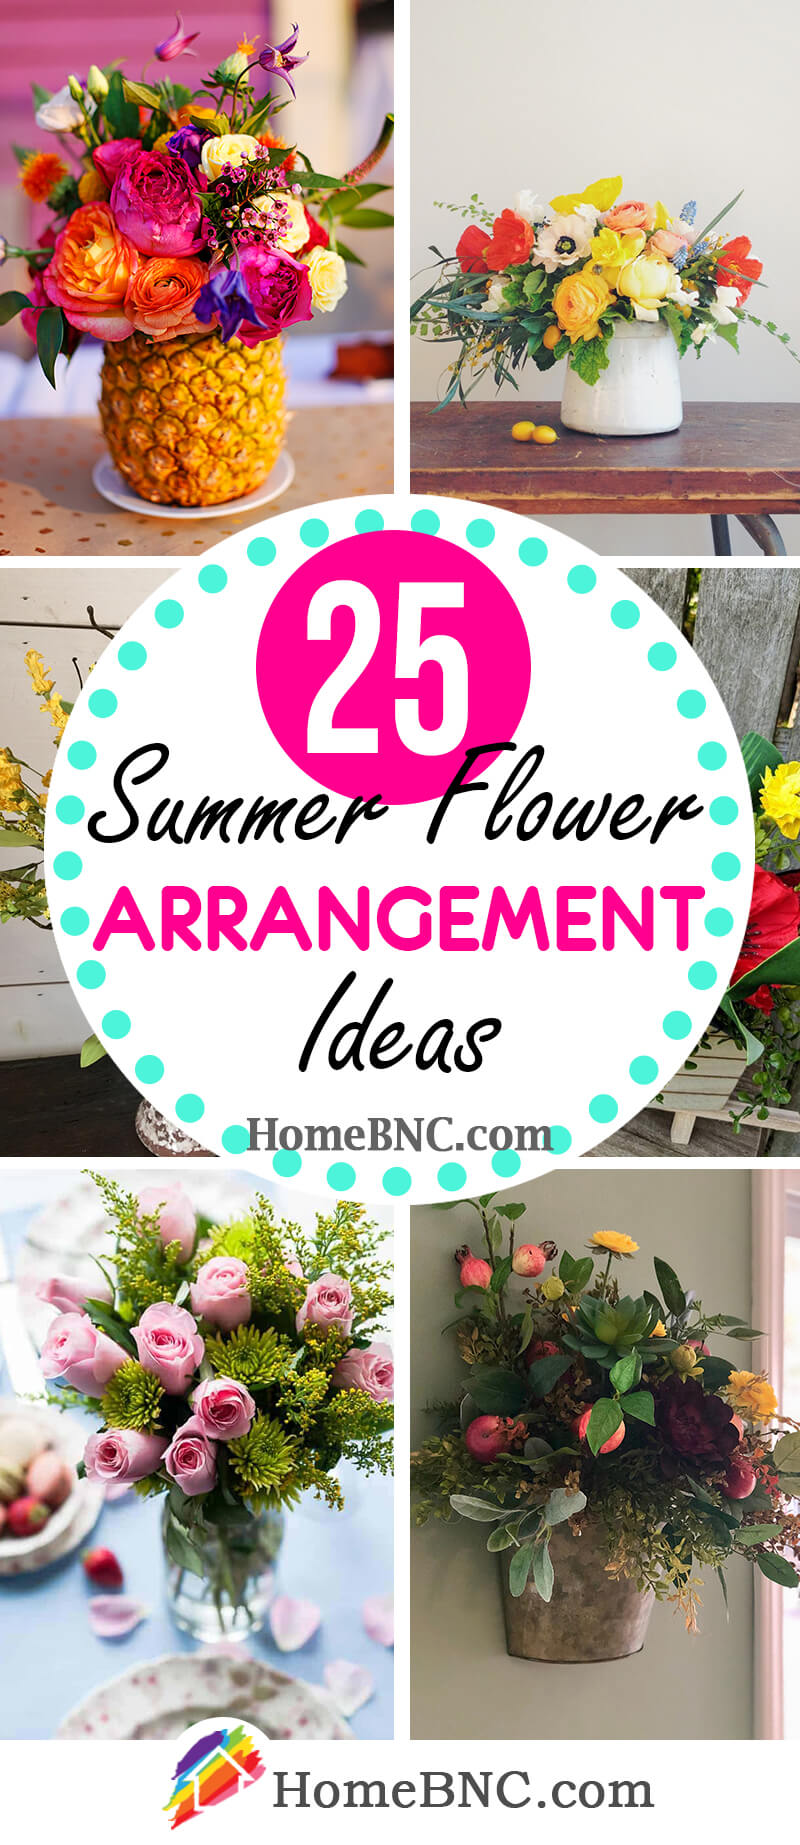 Summer Flower Arrangement Ideas